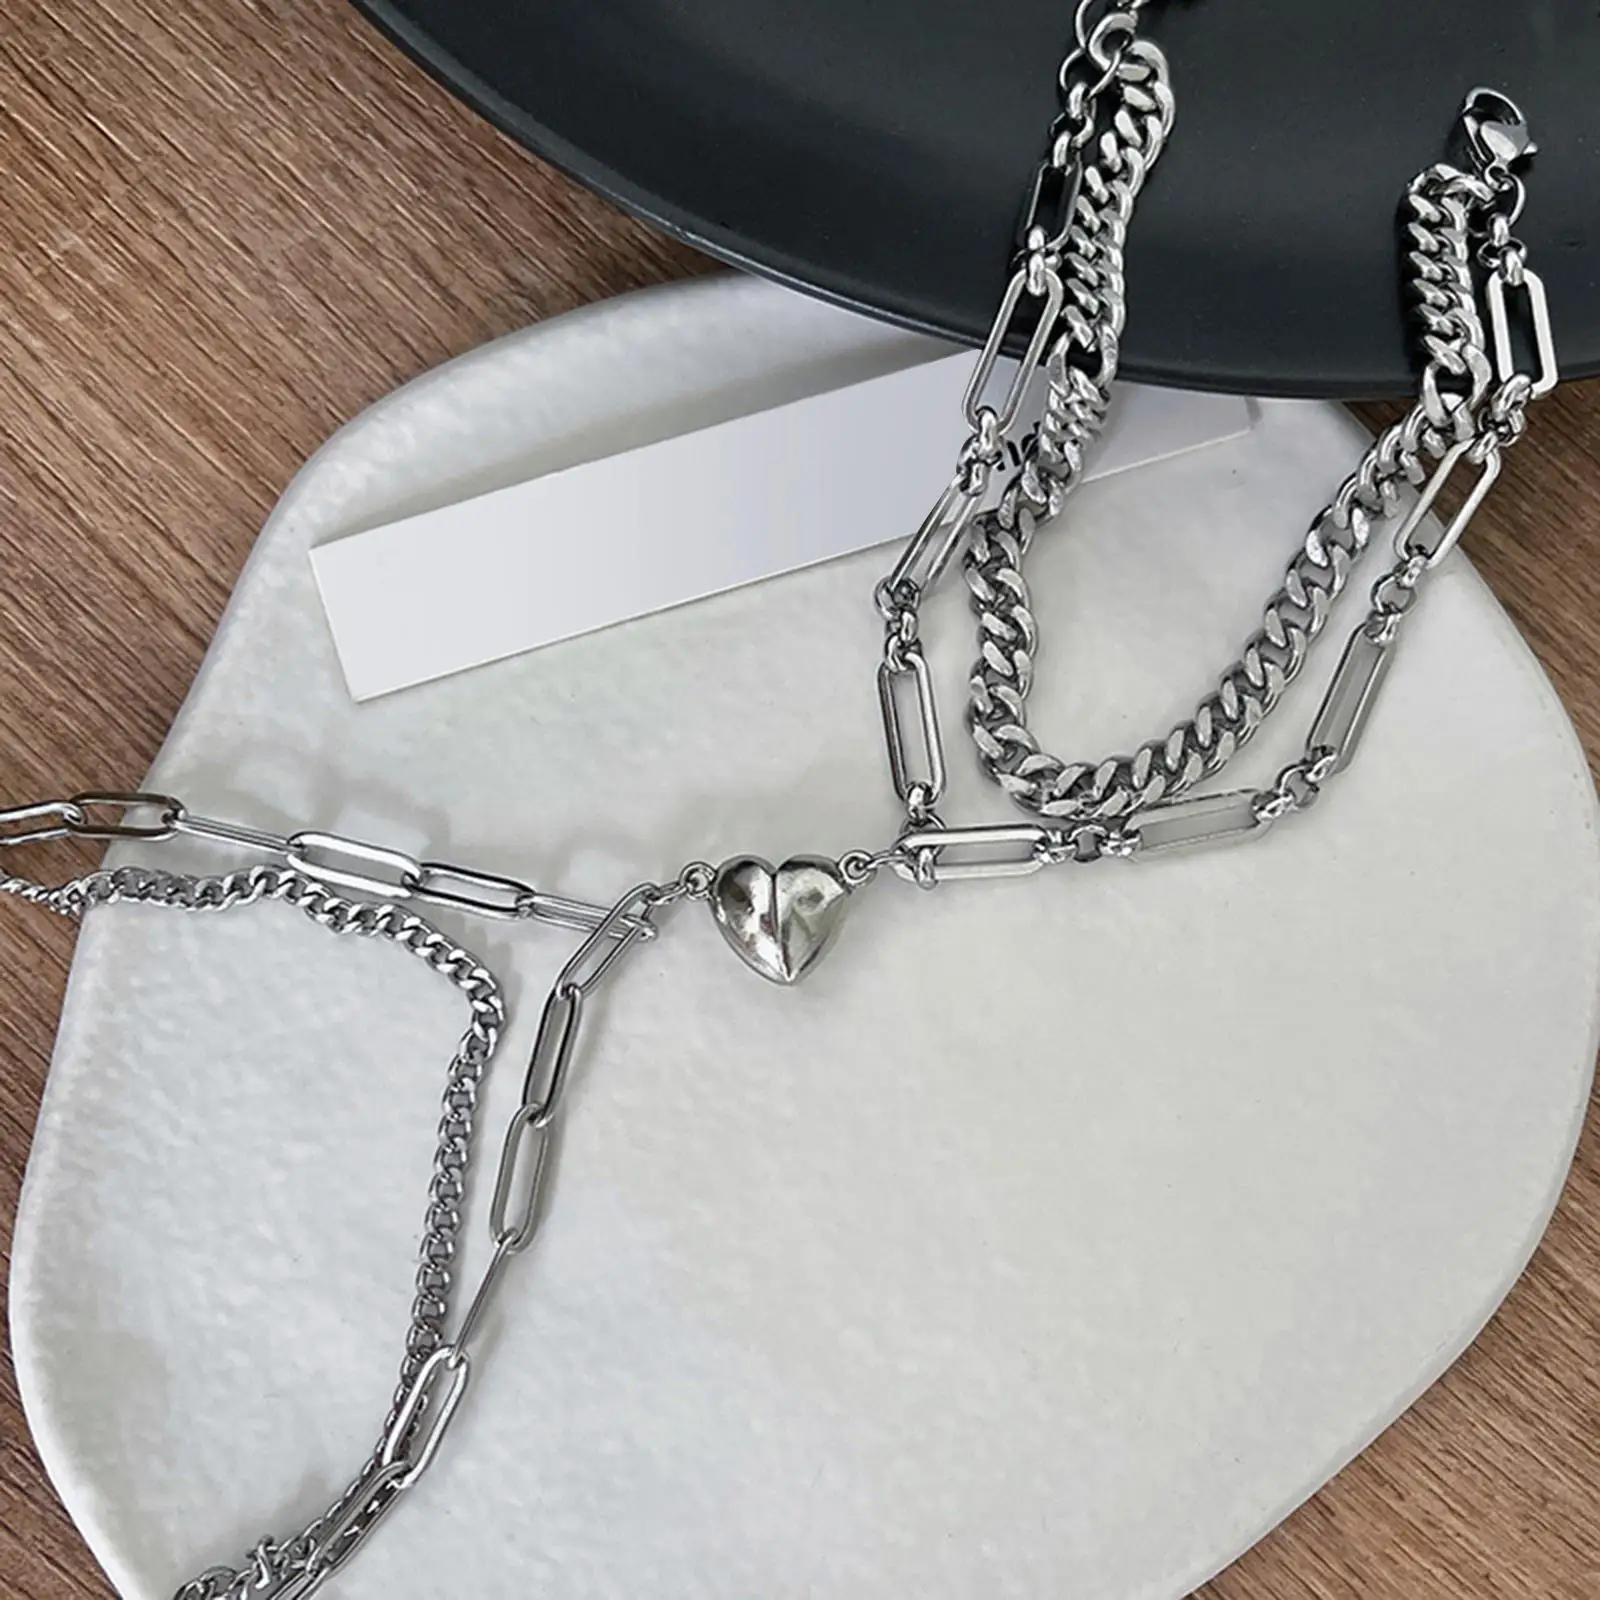 2Pcs Titanium heart Magnetic Couple Bracelets Jewelry for Friendship